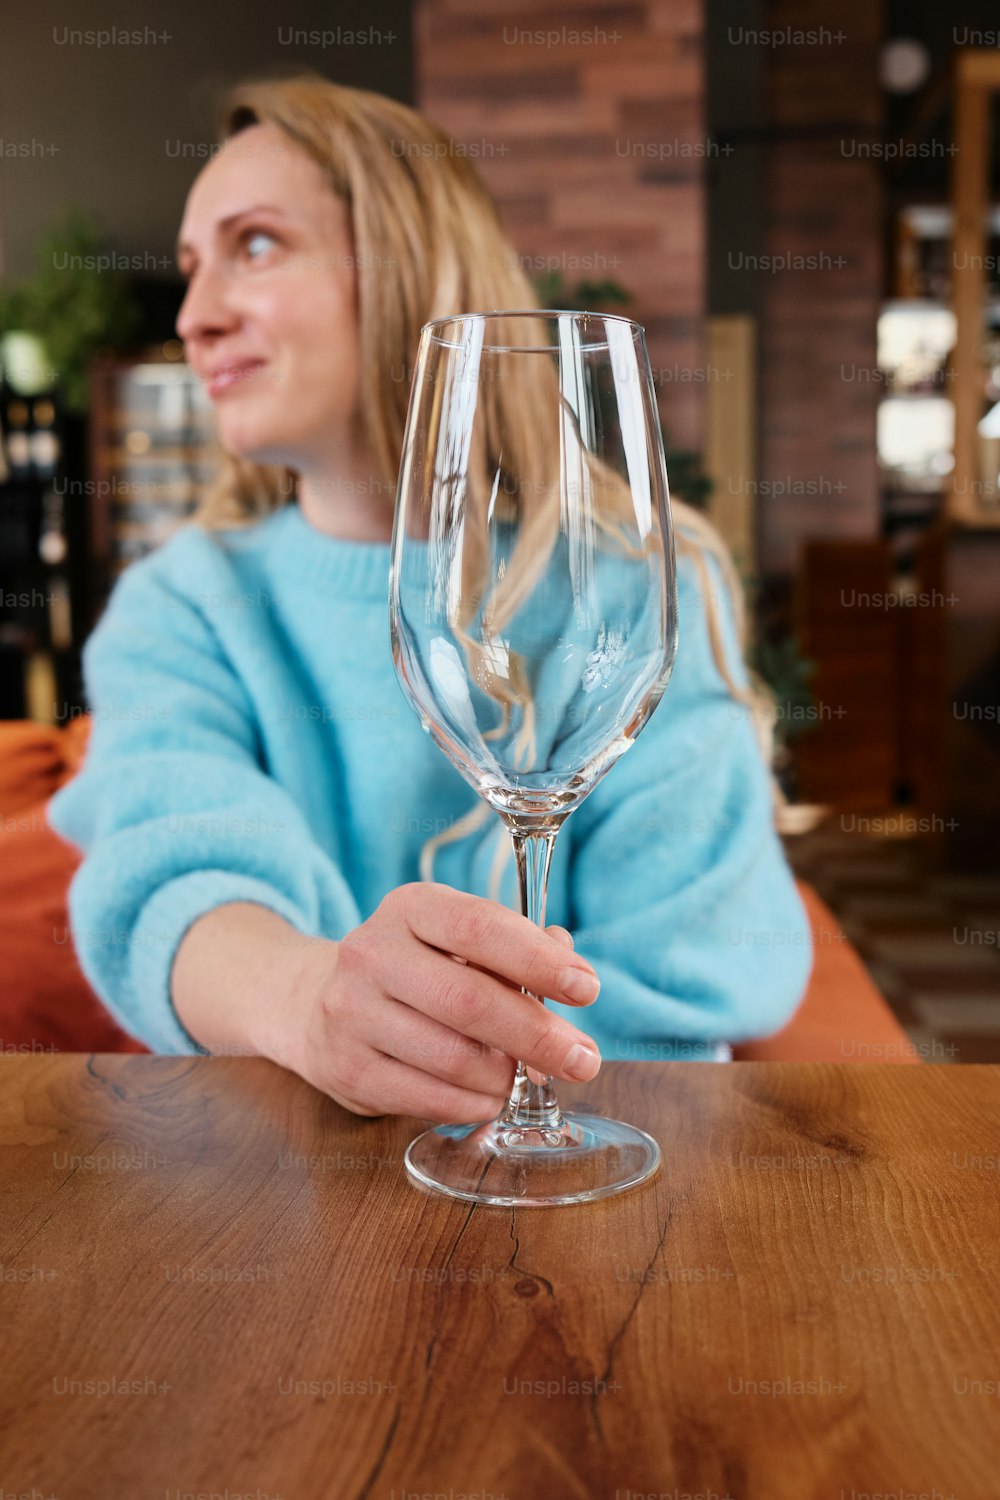 와인 잔을 들고 테이블에 앉아 있는 여자